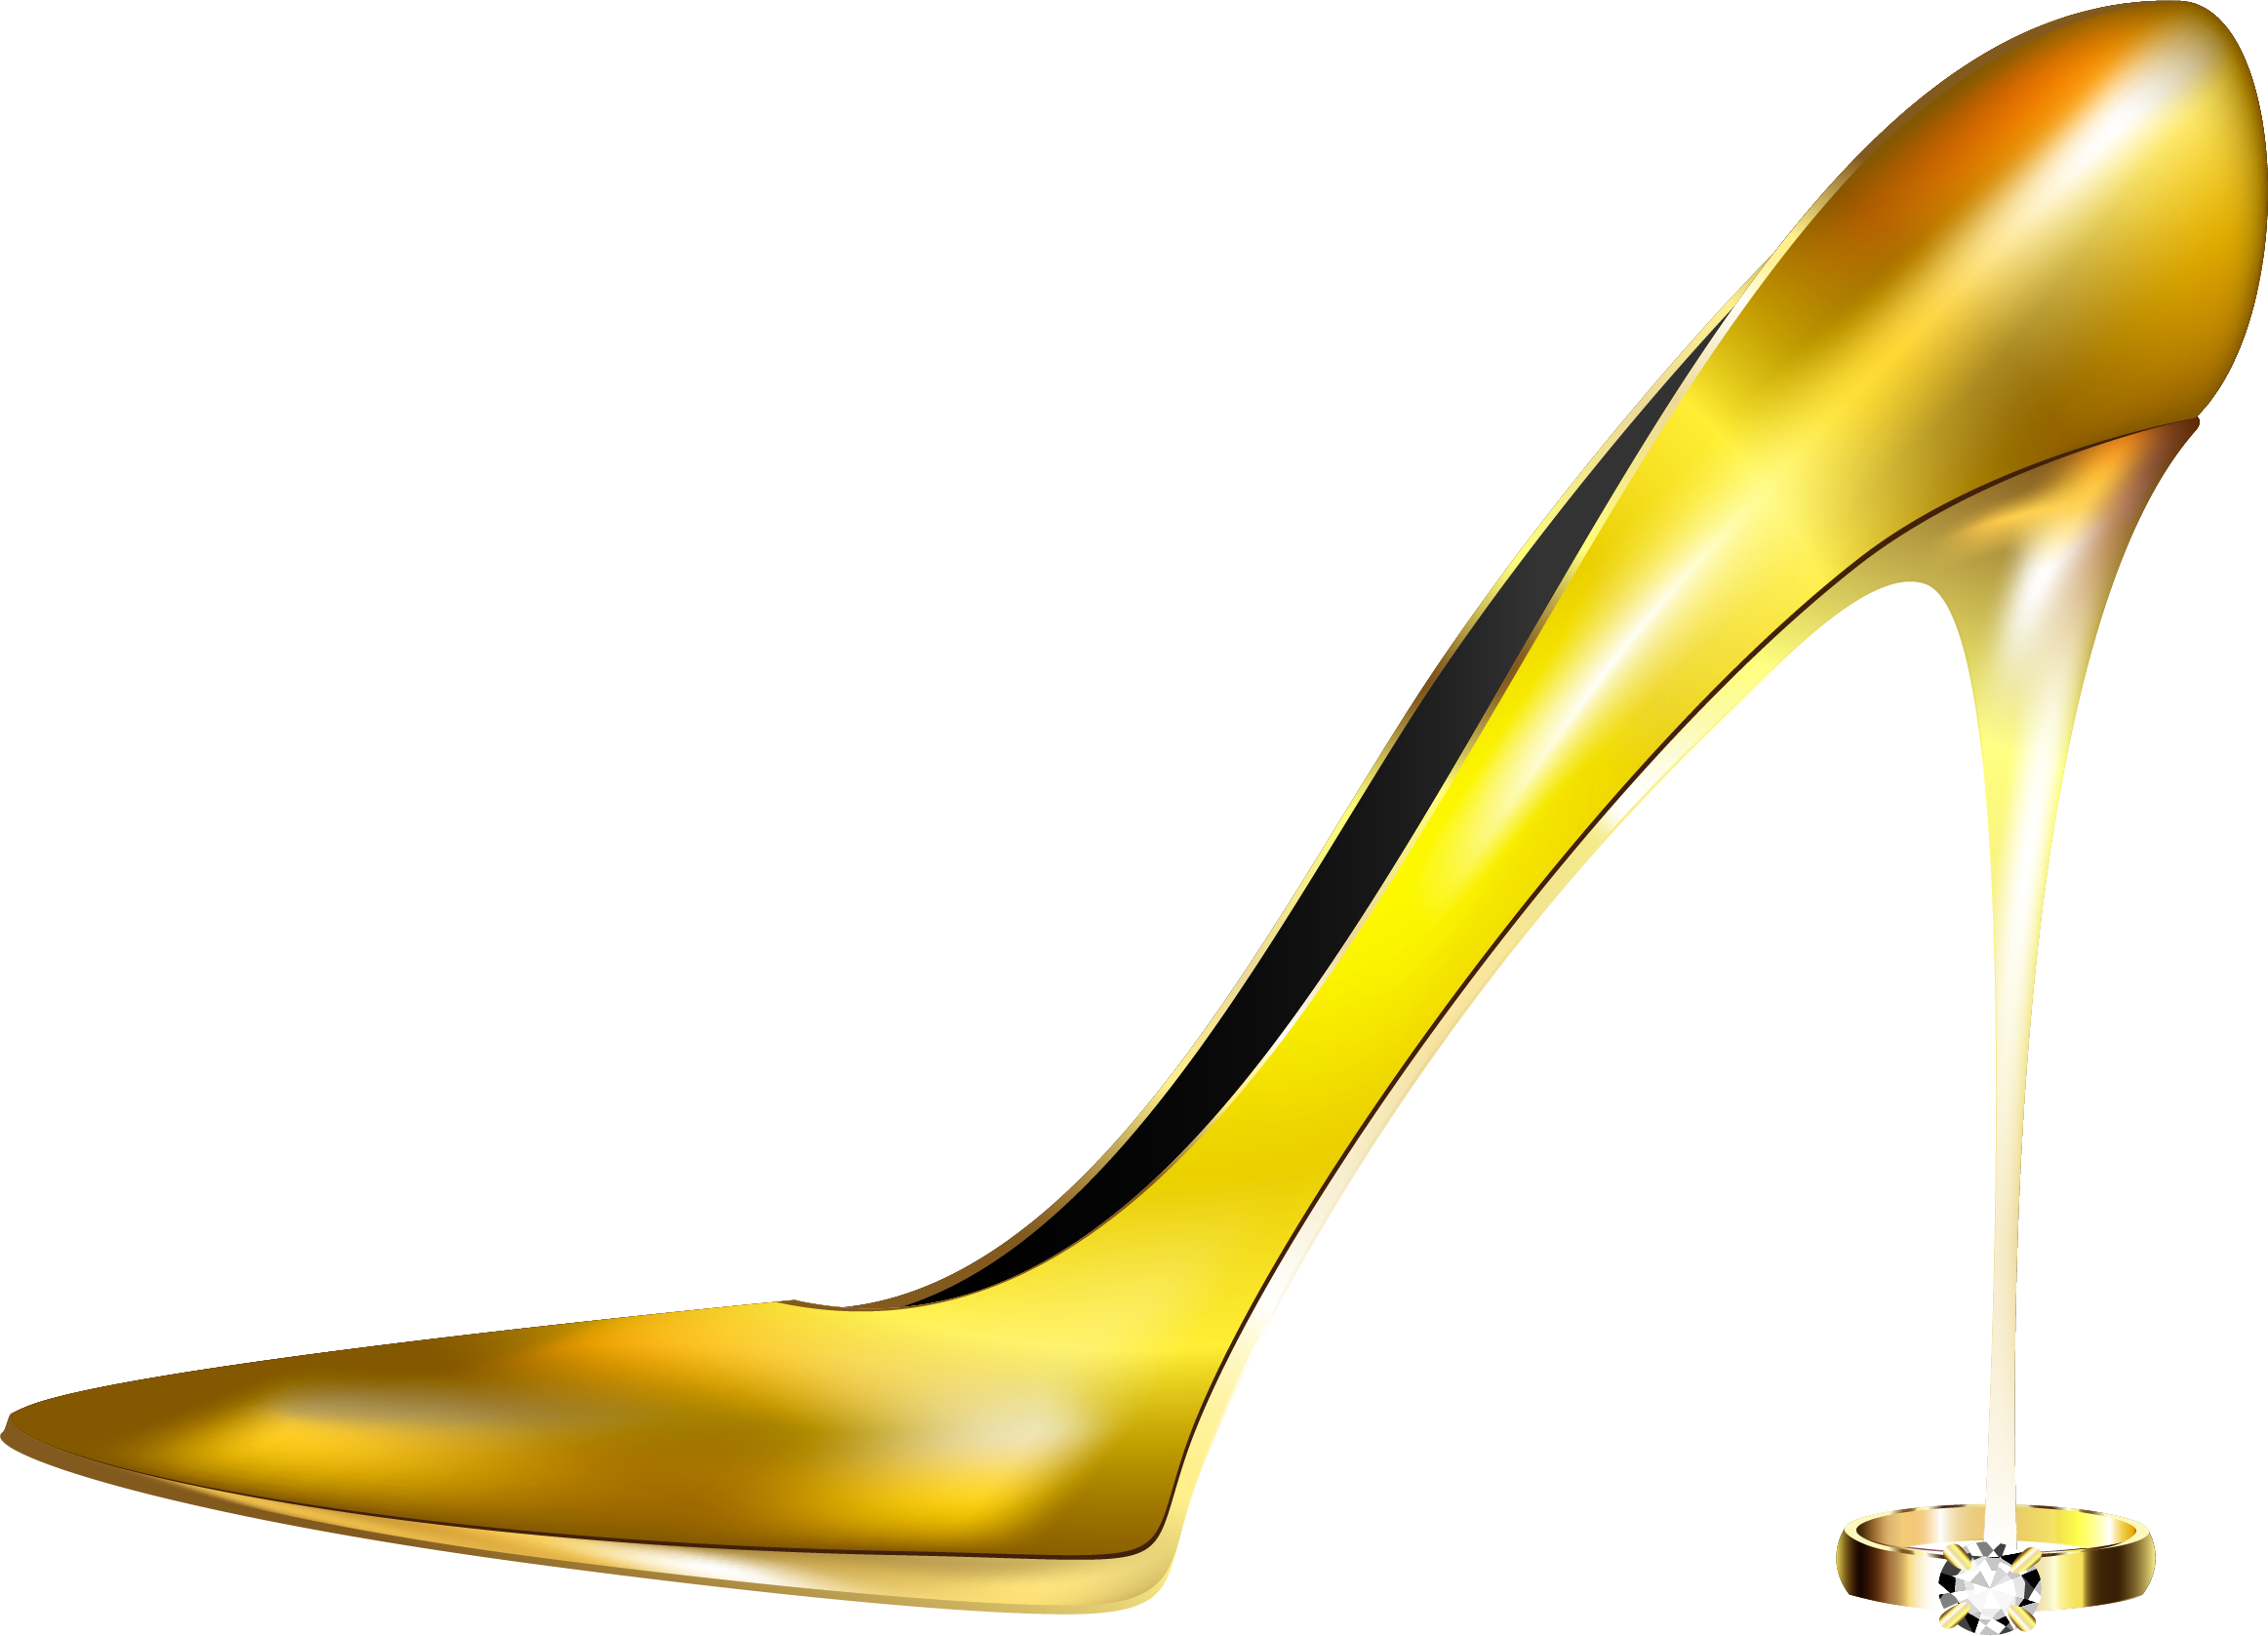 Yellow Heel